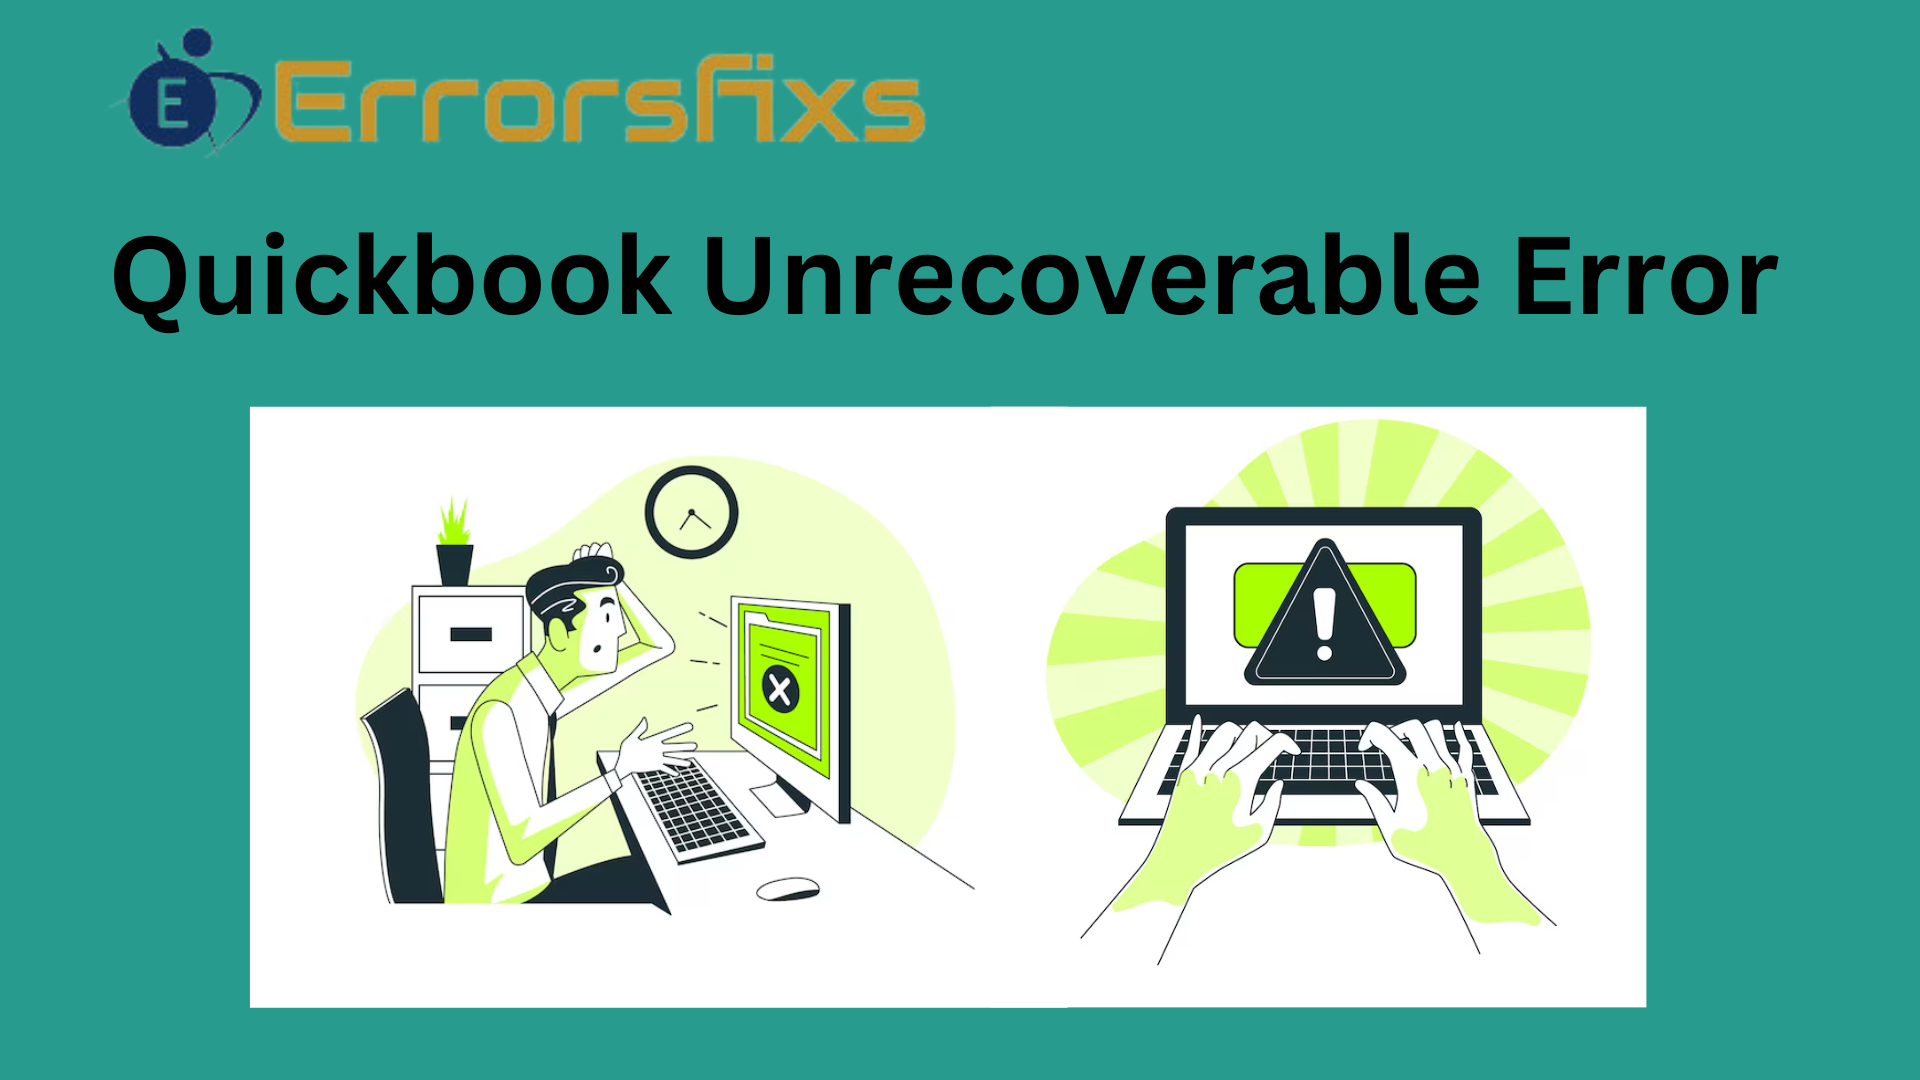 QuickBooks Unrecoverable Error - ErrorsFixs